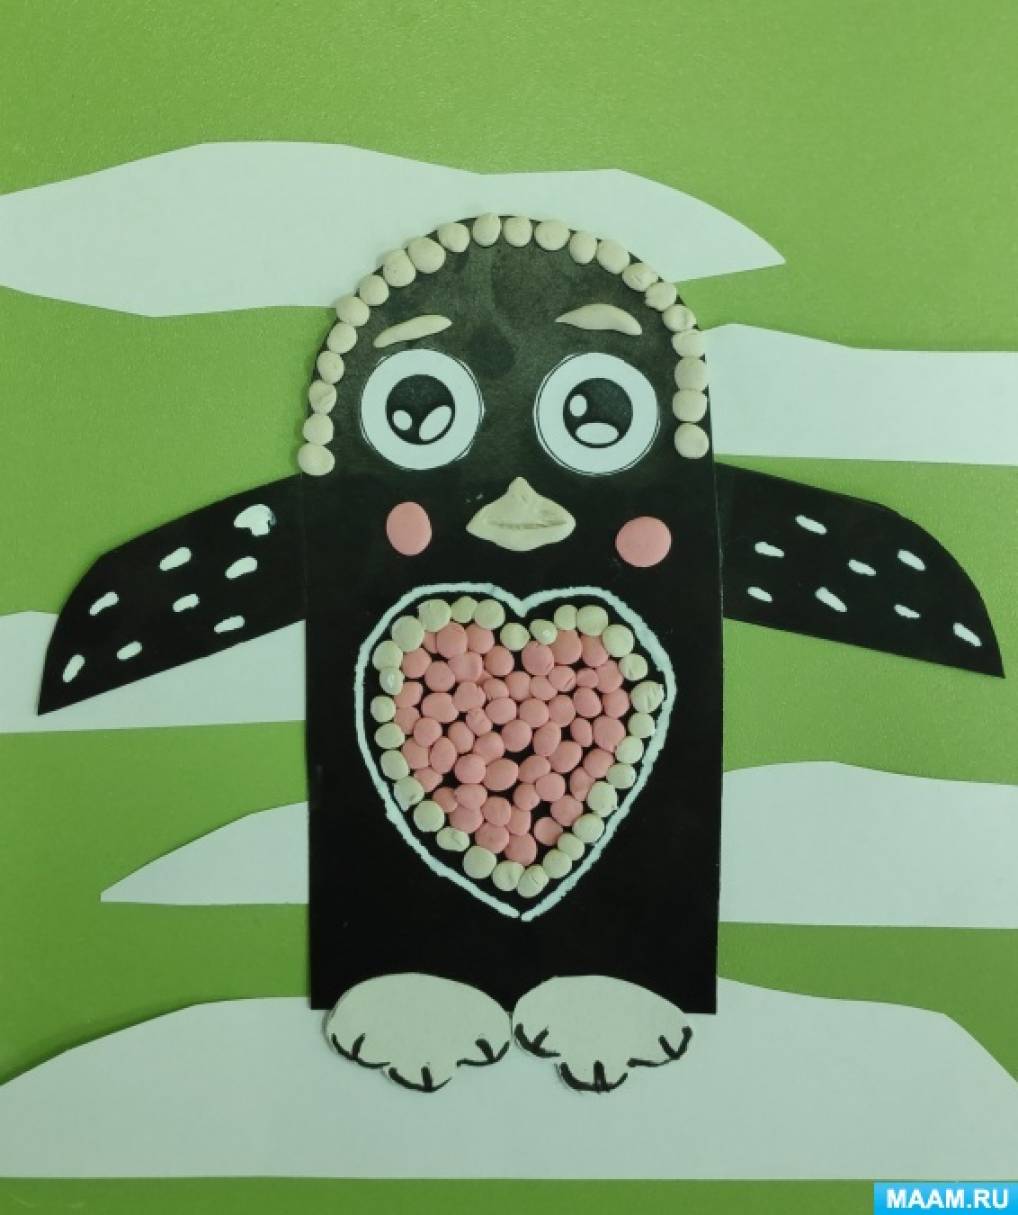 Детский мастер-класс «Поделка из картона с элементами пластилинографии «Пингвин с сердечком» к Дню пингвина на МAAM